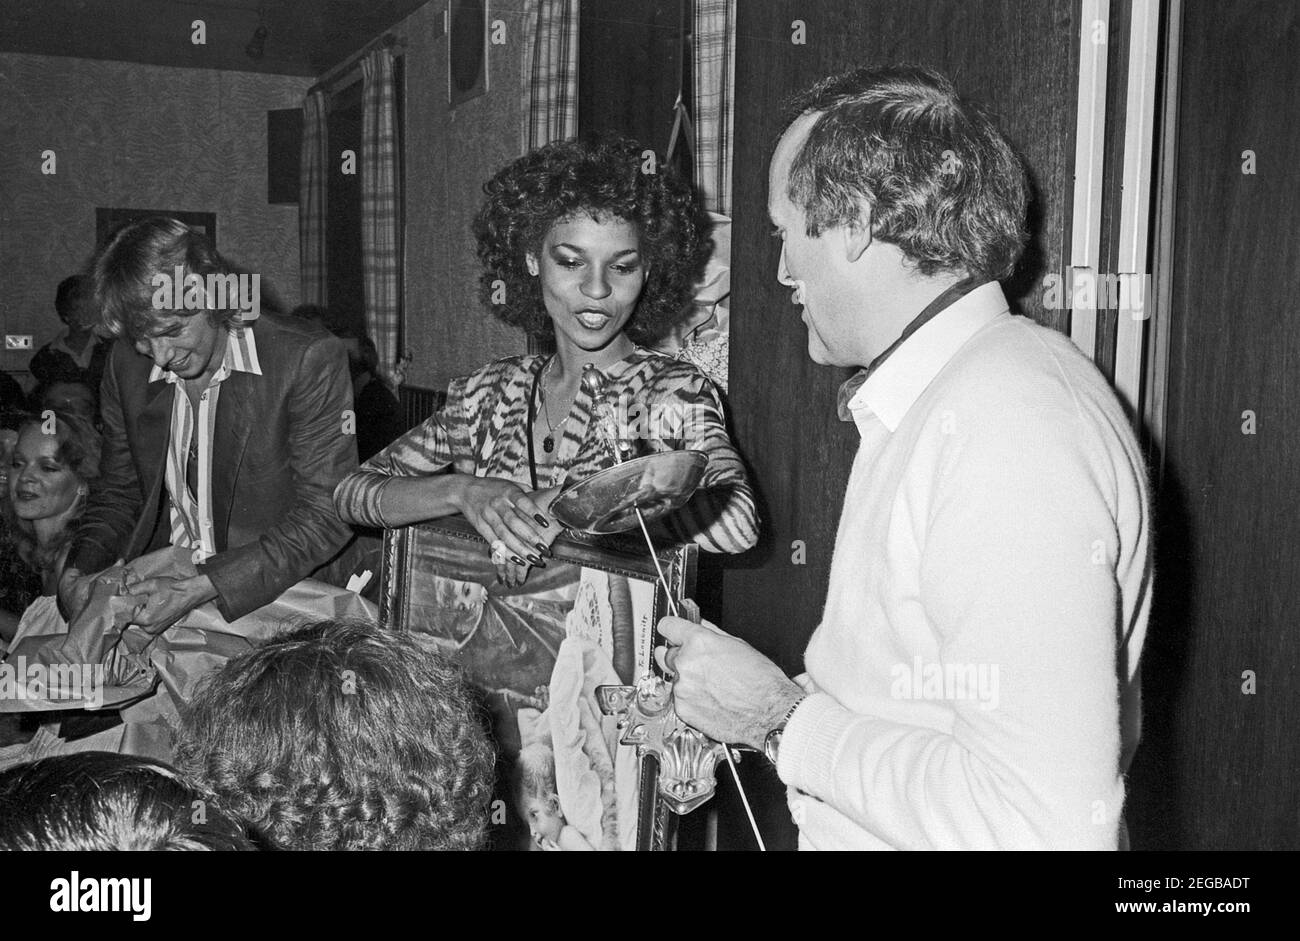 Schlager-, Disco- und Popsängerin Ramona Wulf bein einem Abendessen zur Neuen Revue Super Live Show, Deutschland 1979. Schlager, Disco- und Popsängerin Ramona Wulf bei einer Abendveranstaltung, Deutschland 1979. Stockfoto